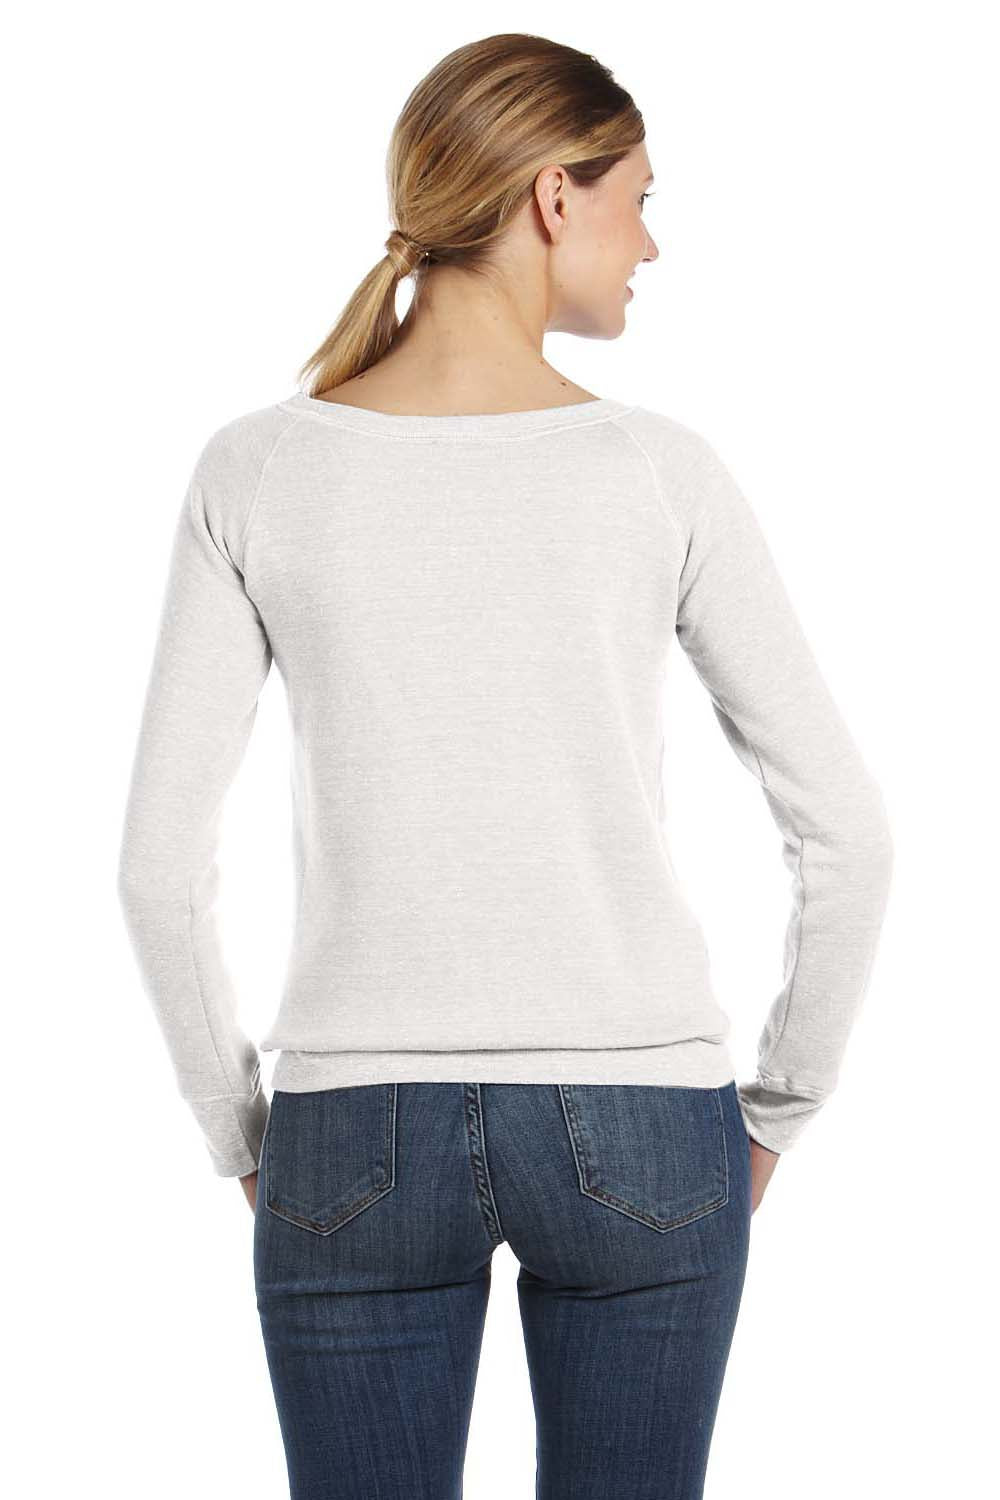 Bella + Canvas 7501 Womens Sponge Fleece Wide Neck Sweatshirt Solid White Model Back